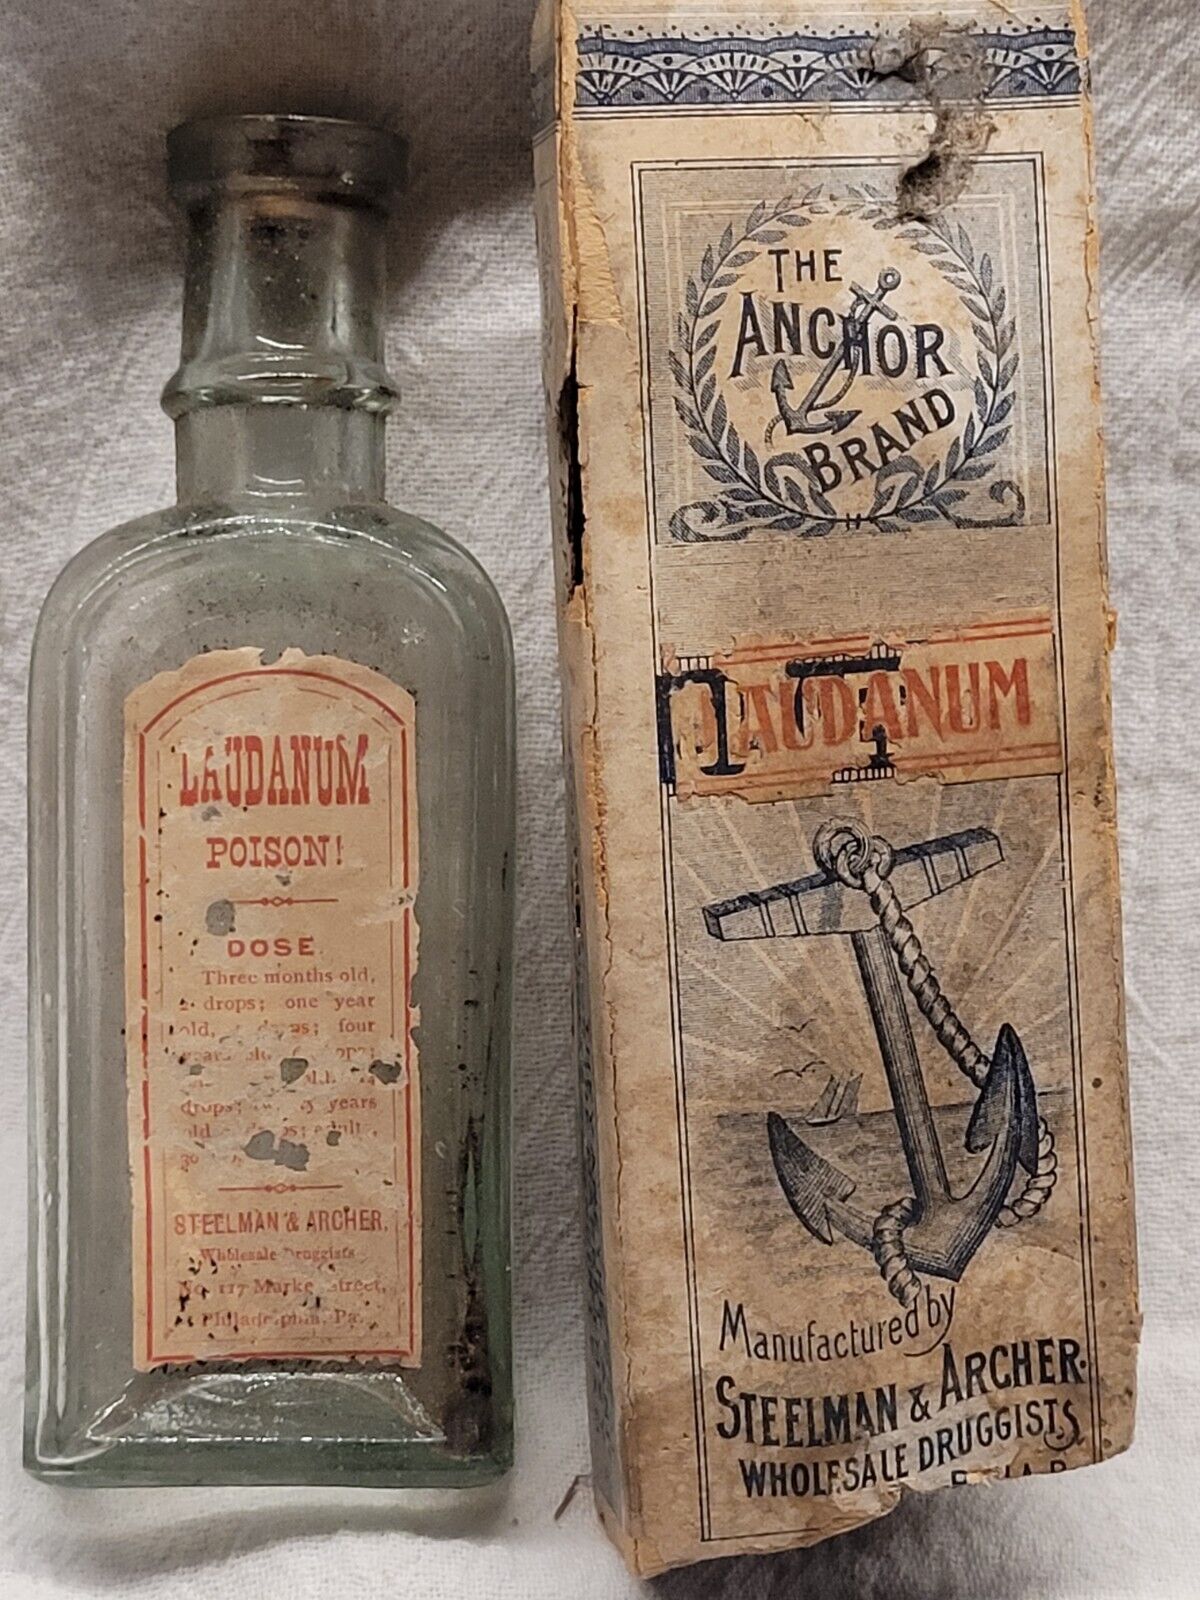 Antique Stillman & Archer Poison Bottle Original Label & Box Great Graphics Rare